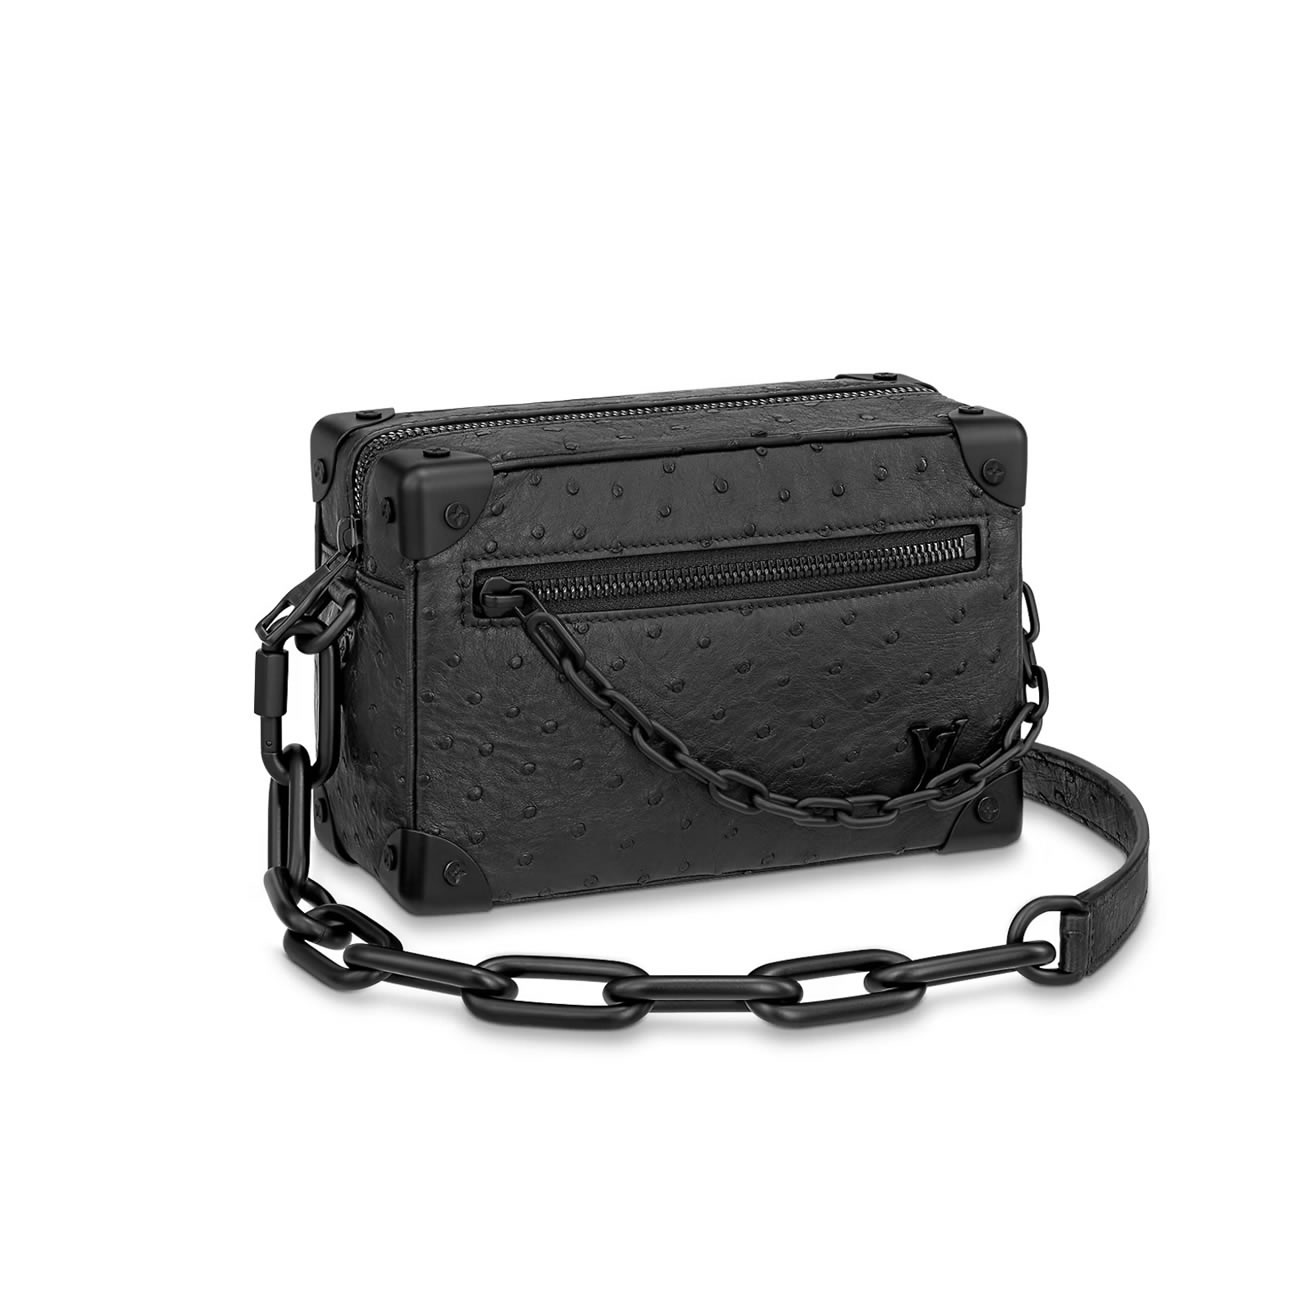 Lv Mini Soft Trunk Bags N82245 1 - kickbulk.co